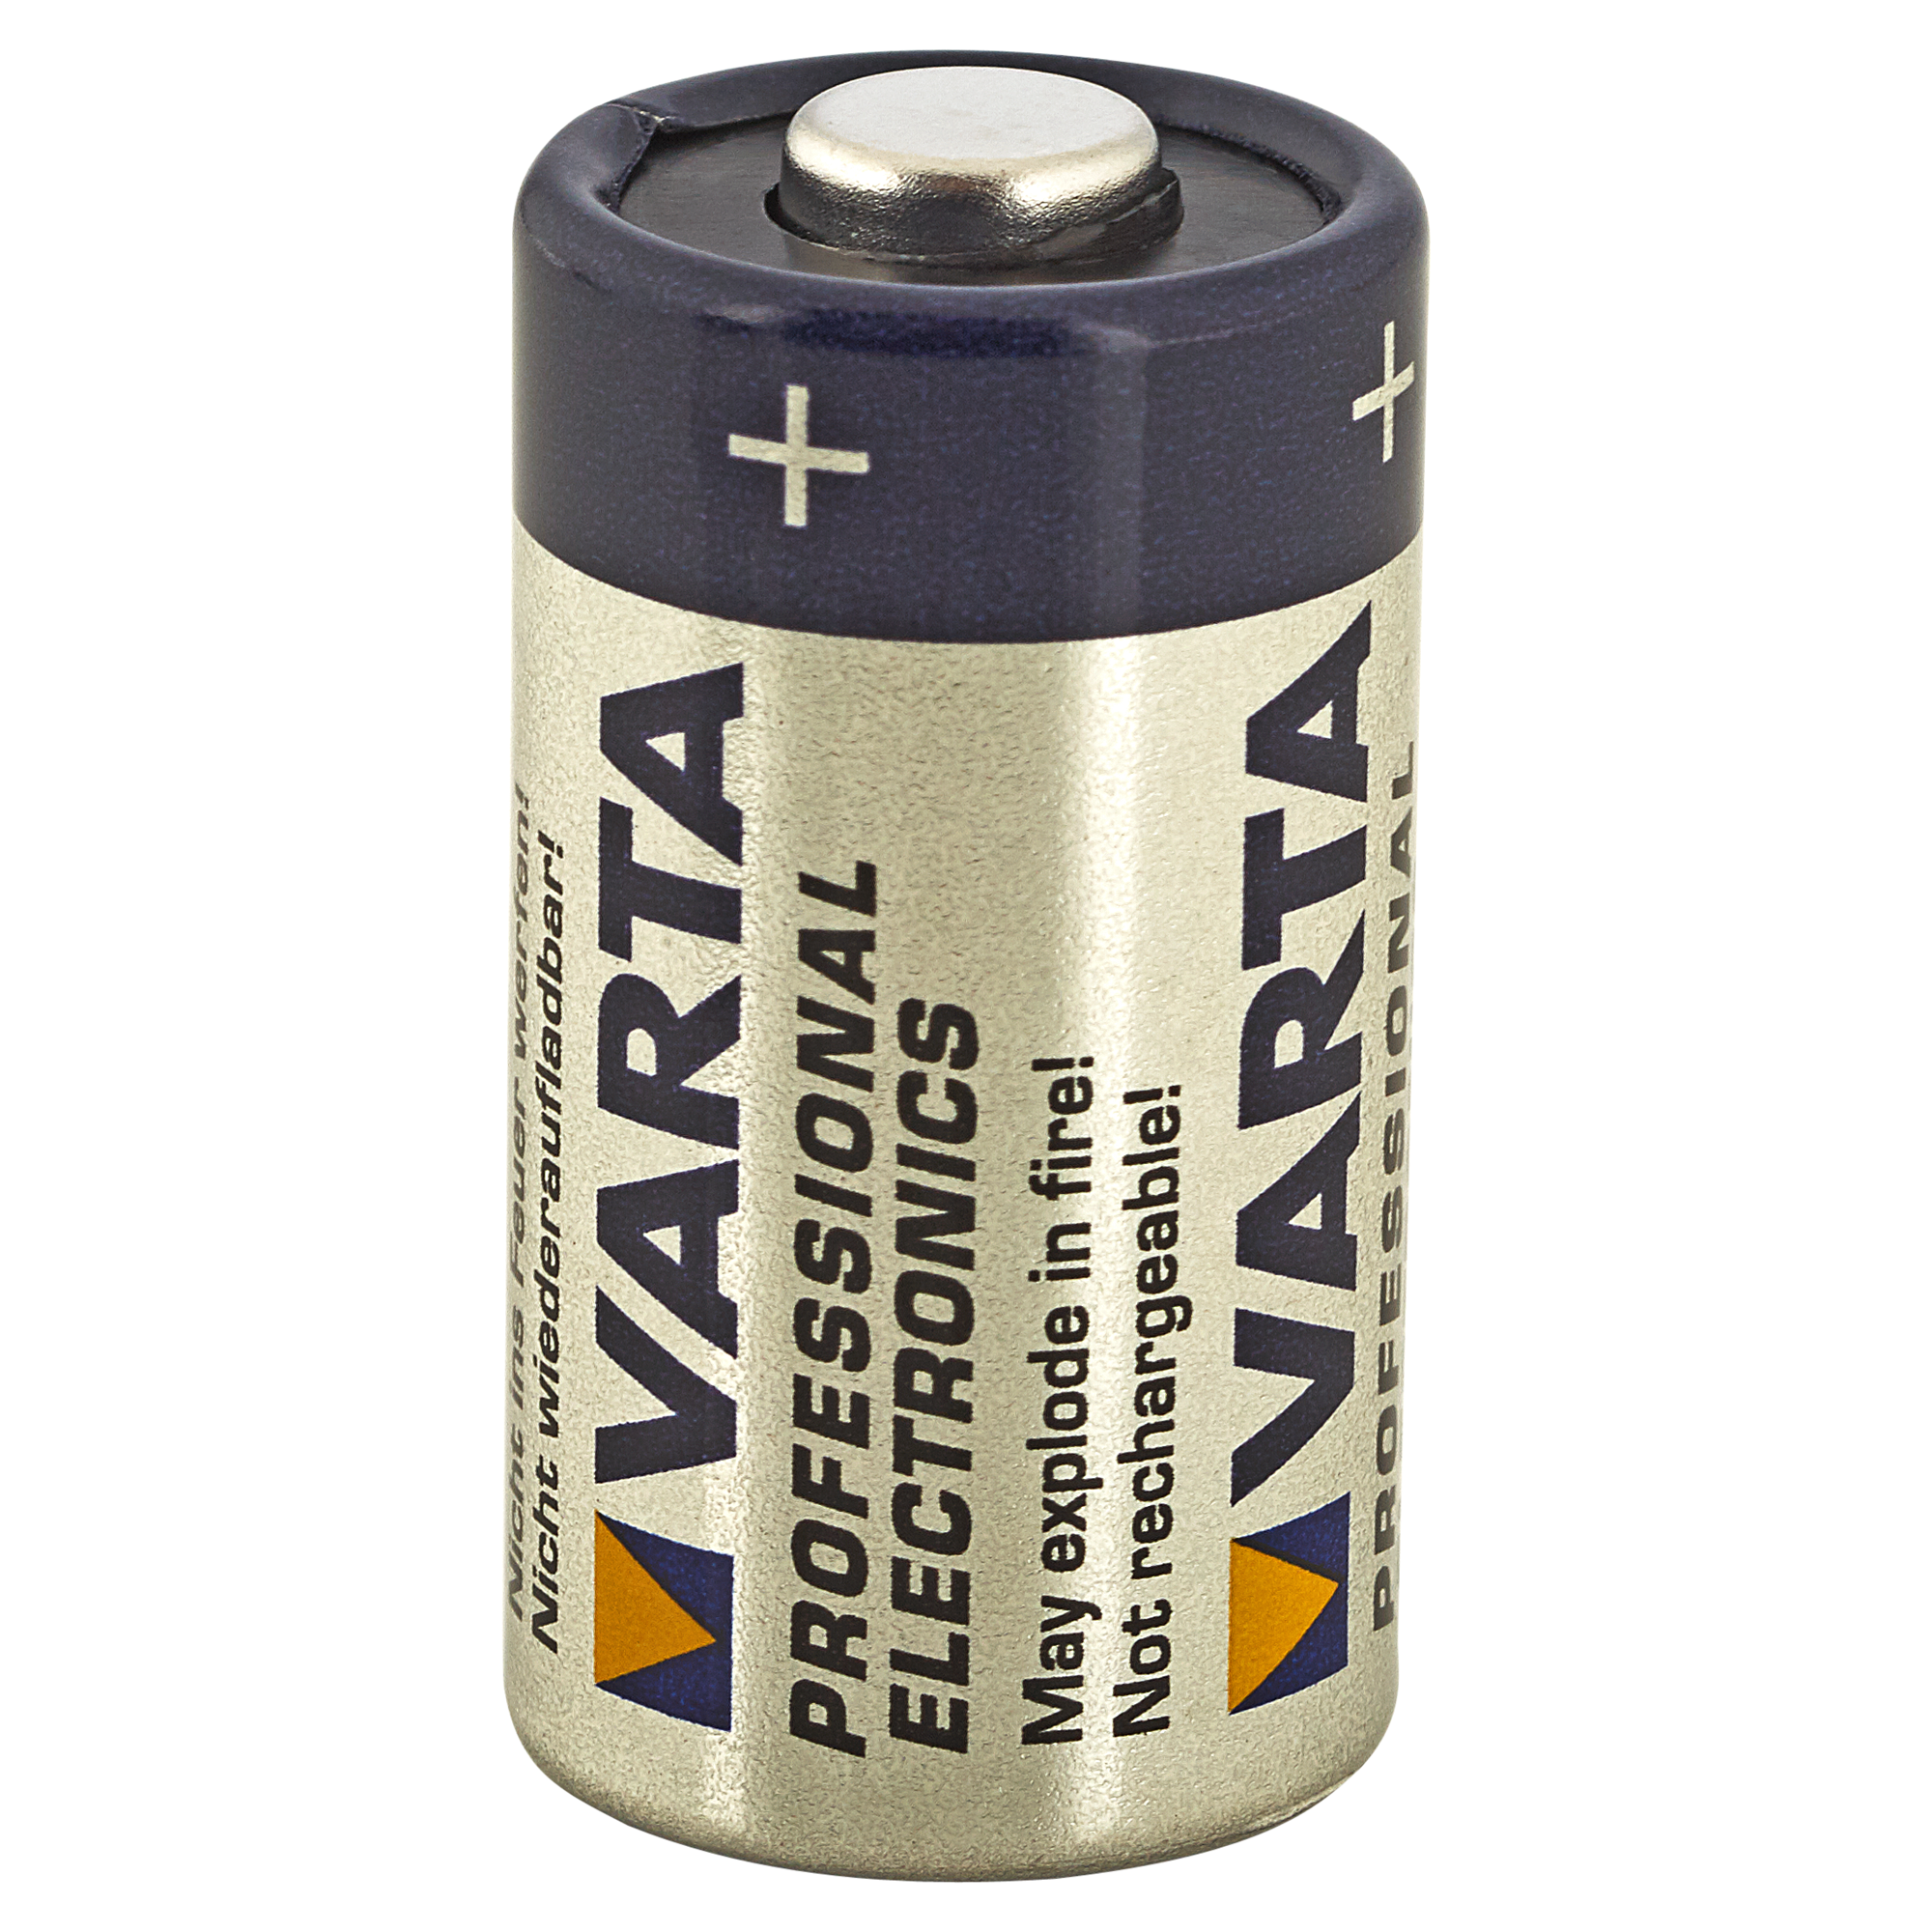 Fotobatterie "Professional Electronics" V28PX 4 SR 44 6,2 V + product picture